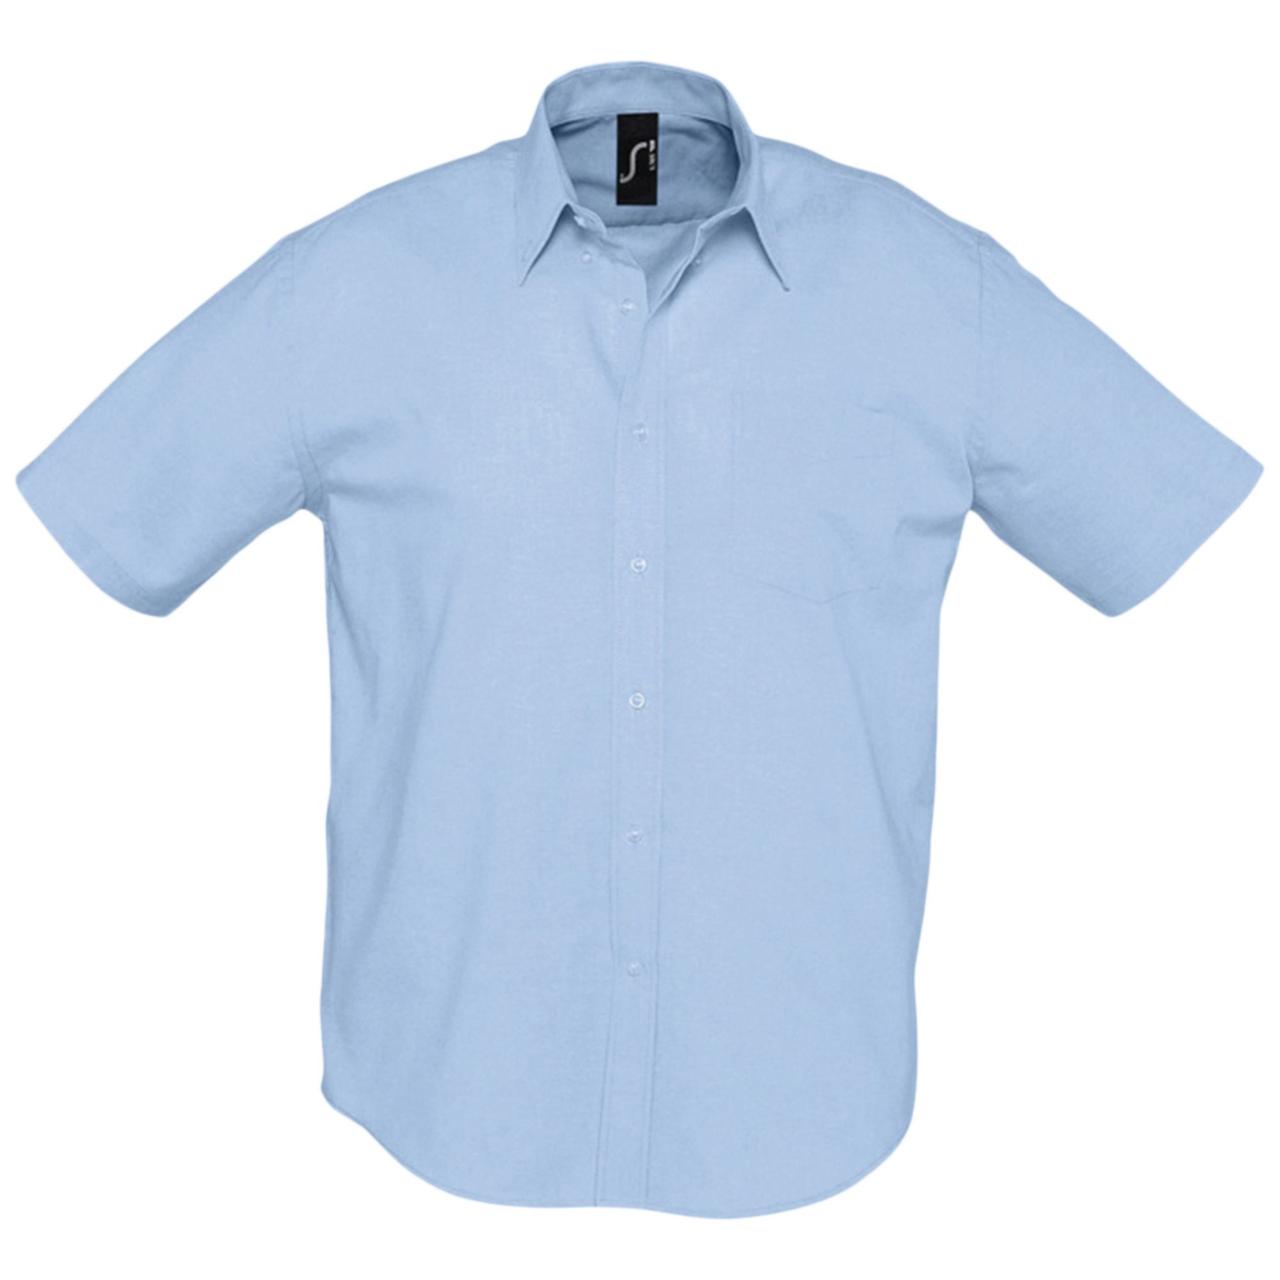 Рубашка летняя мужская с коротким рукавом купить. Pimlico Blue рубашка мужская. 99051-21vm мужская рубашка. Голубая рубашка мужская с коротким рукавом. Мужчина в рубашке.